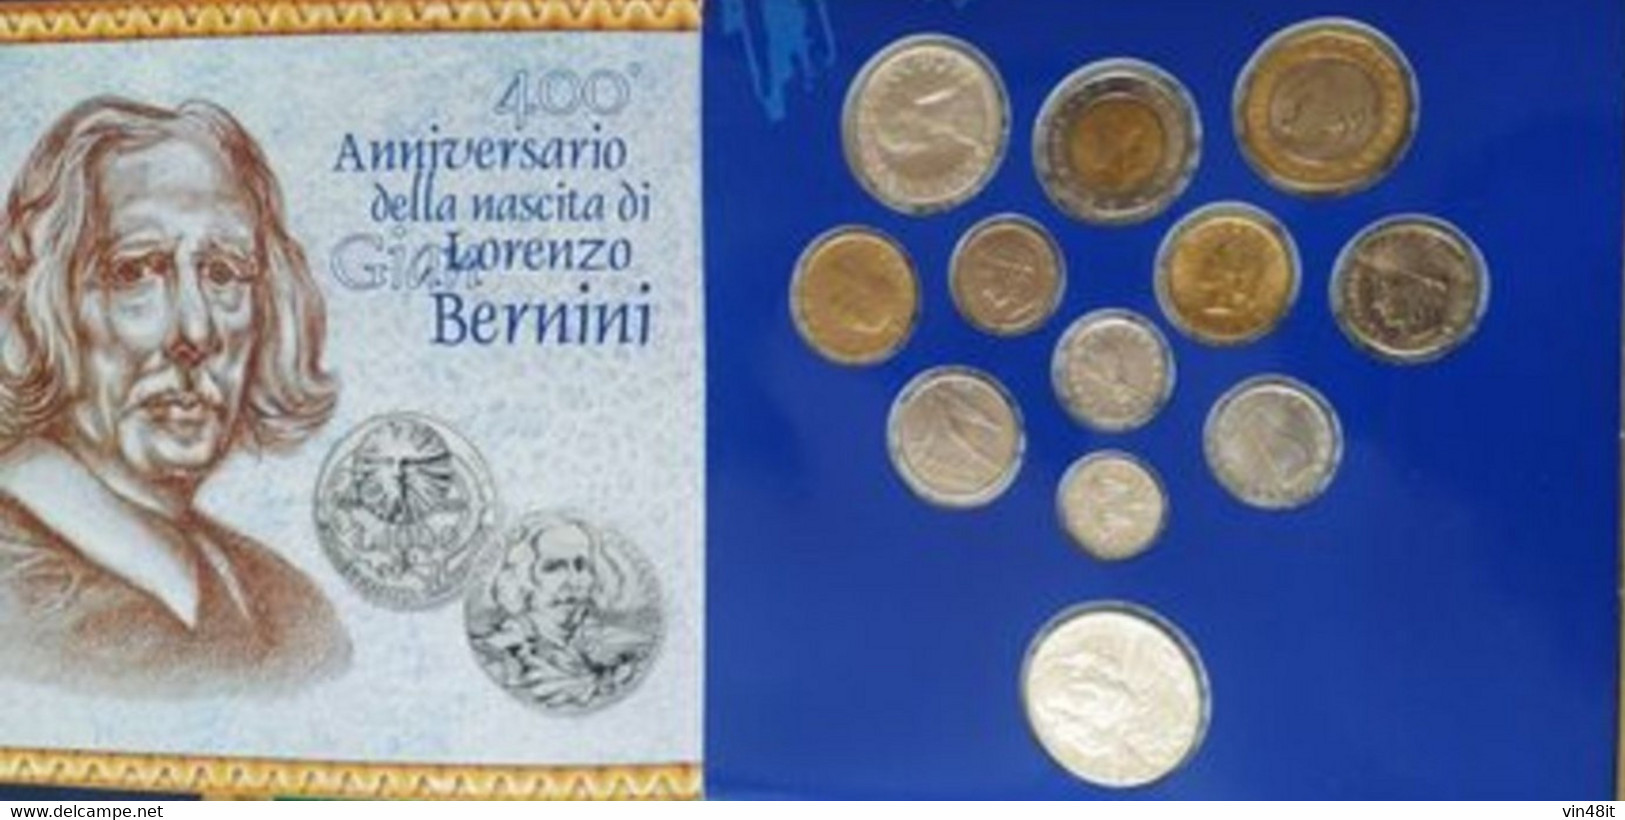 1998  - ITALIA REPUBBLICA  -  SET FIOR DI CONIO  - 12  MONETE  - BERNINI   - - Jahressets & Polierte Platten